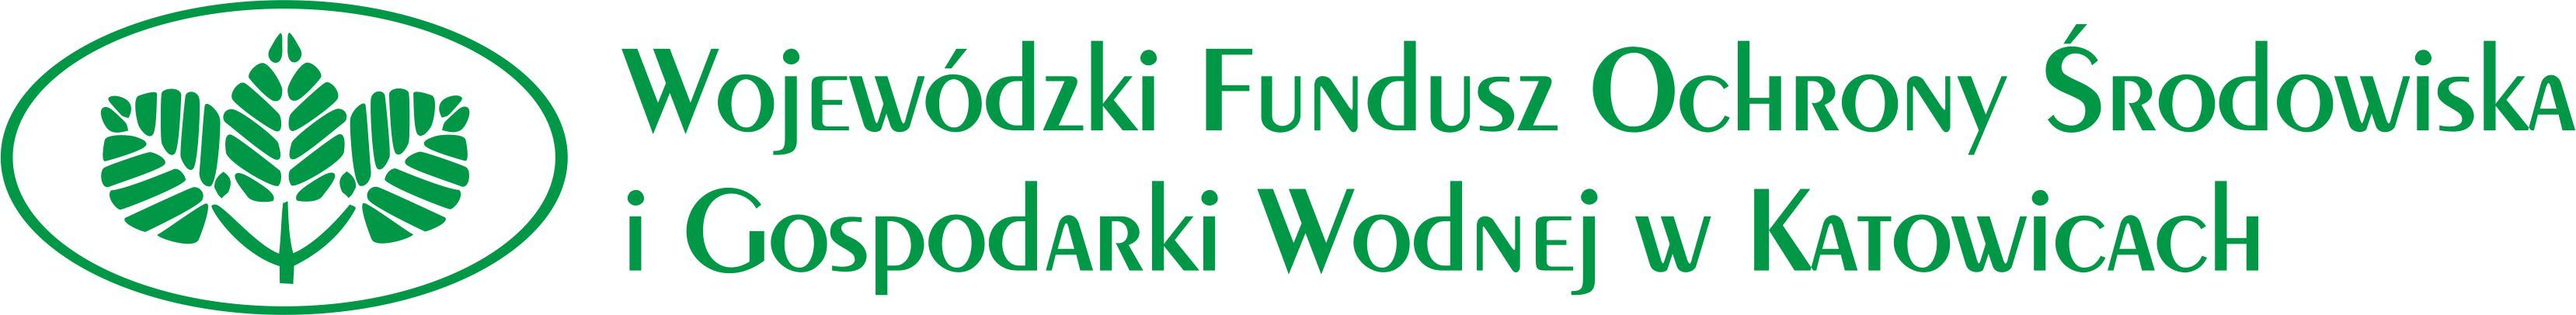 Zielone logo Wojewódzkiego Funduszu Ochrony Środowiska i Gospodarki Wodnej w Katowicach